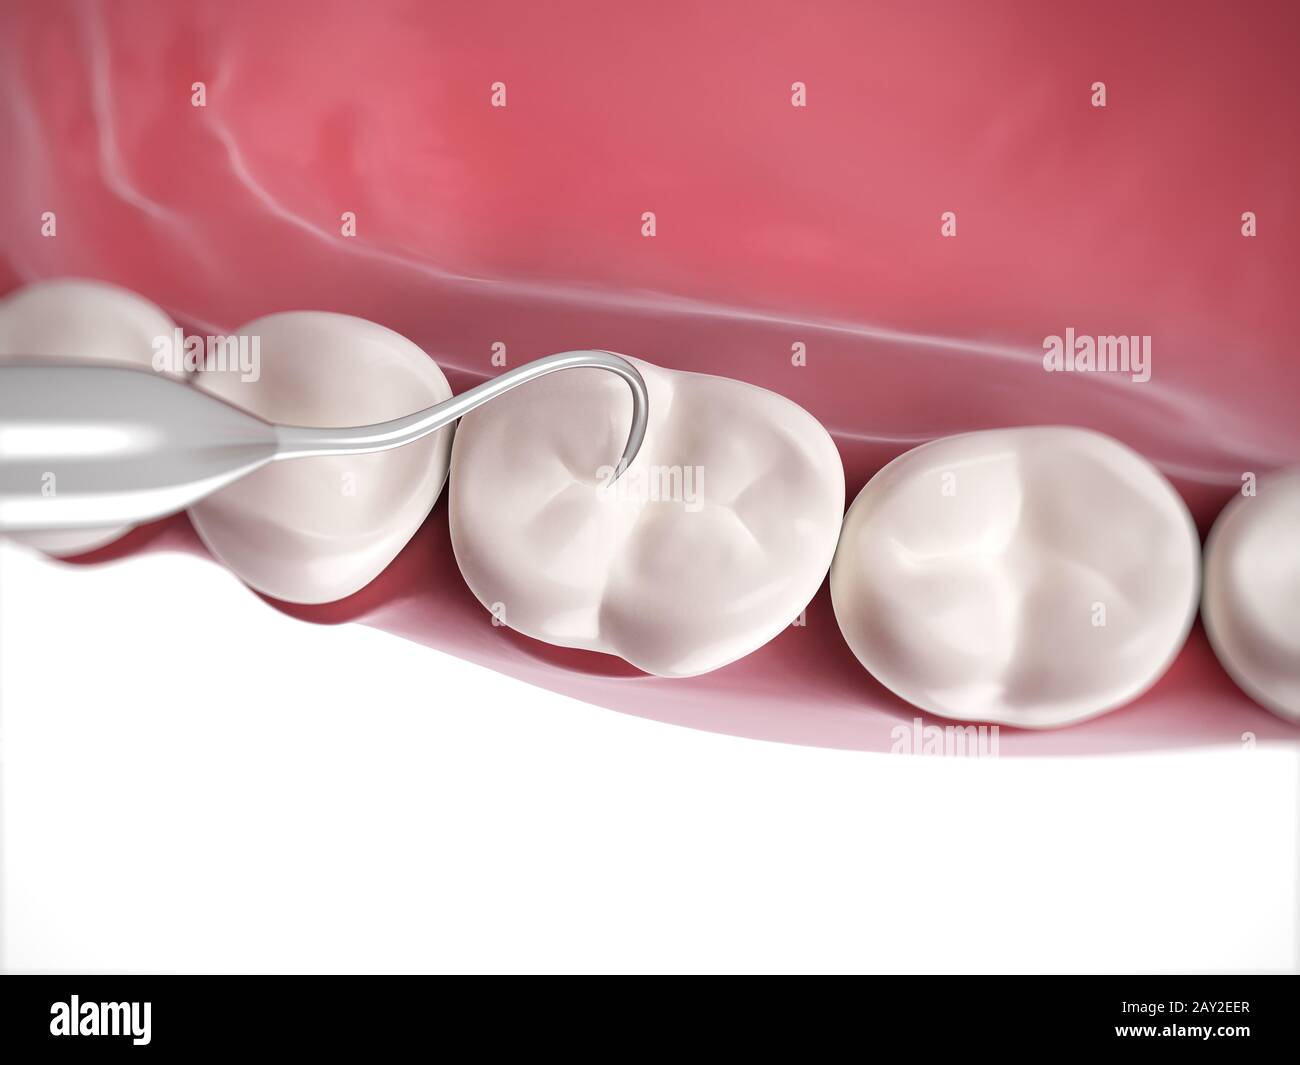 Rendu 3d illustration d'un nettoyage dentaire Banque D'Images